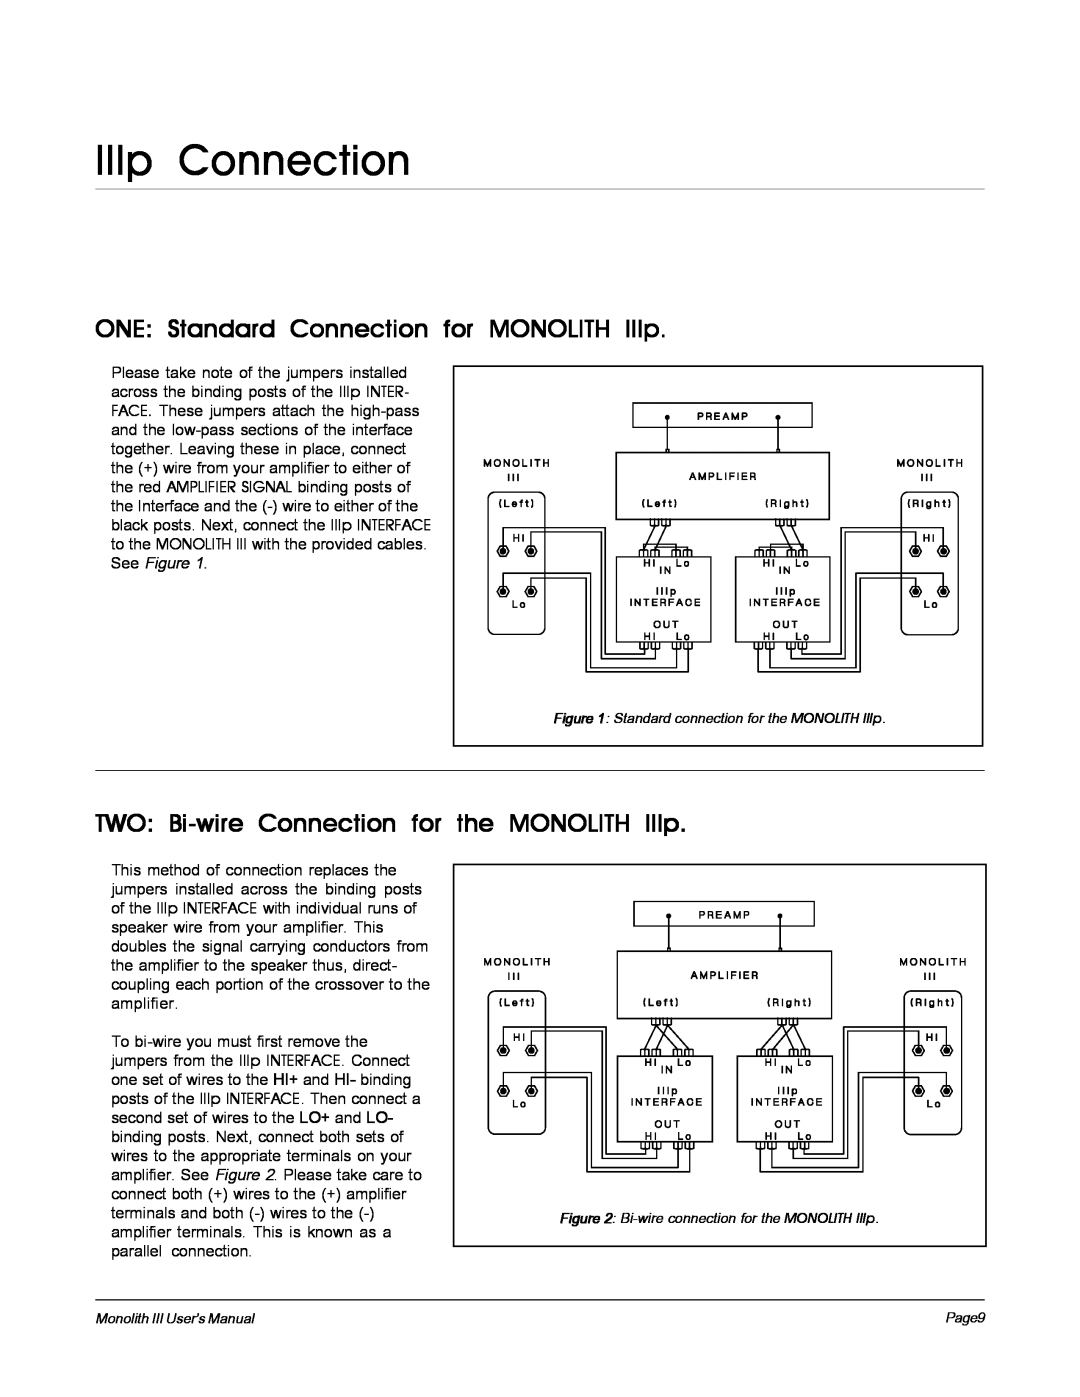 MartinLogan Monolith III user manual IIIp Connection, ONE Standard Connection for MONOLITH IIIp 